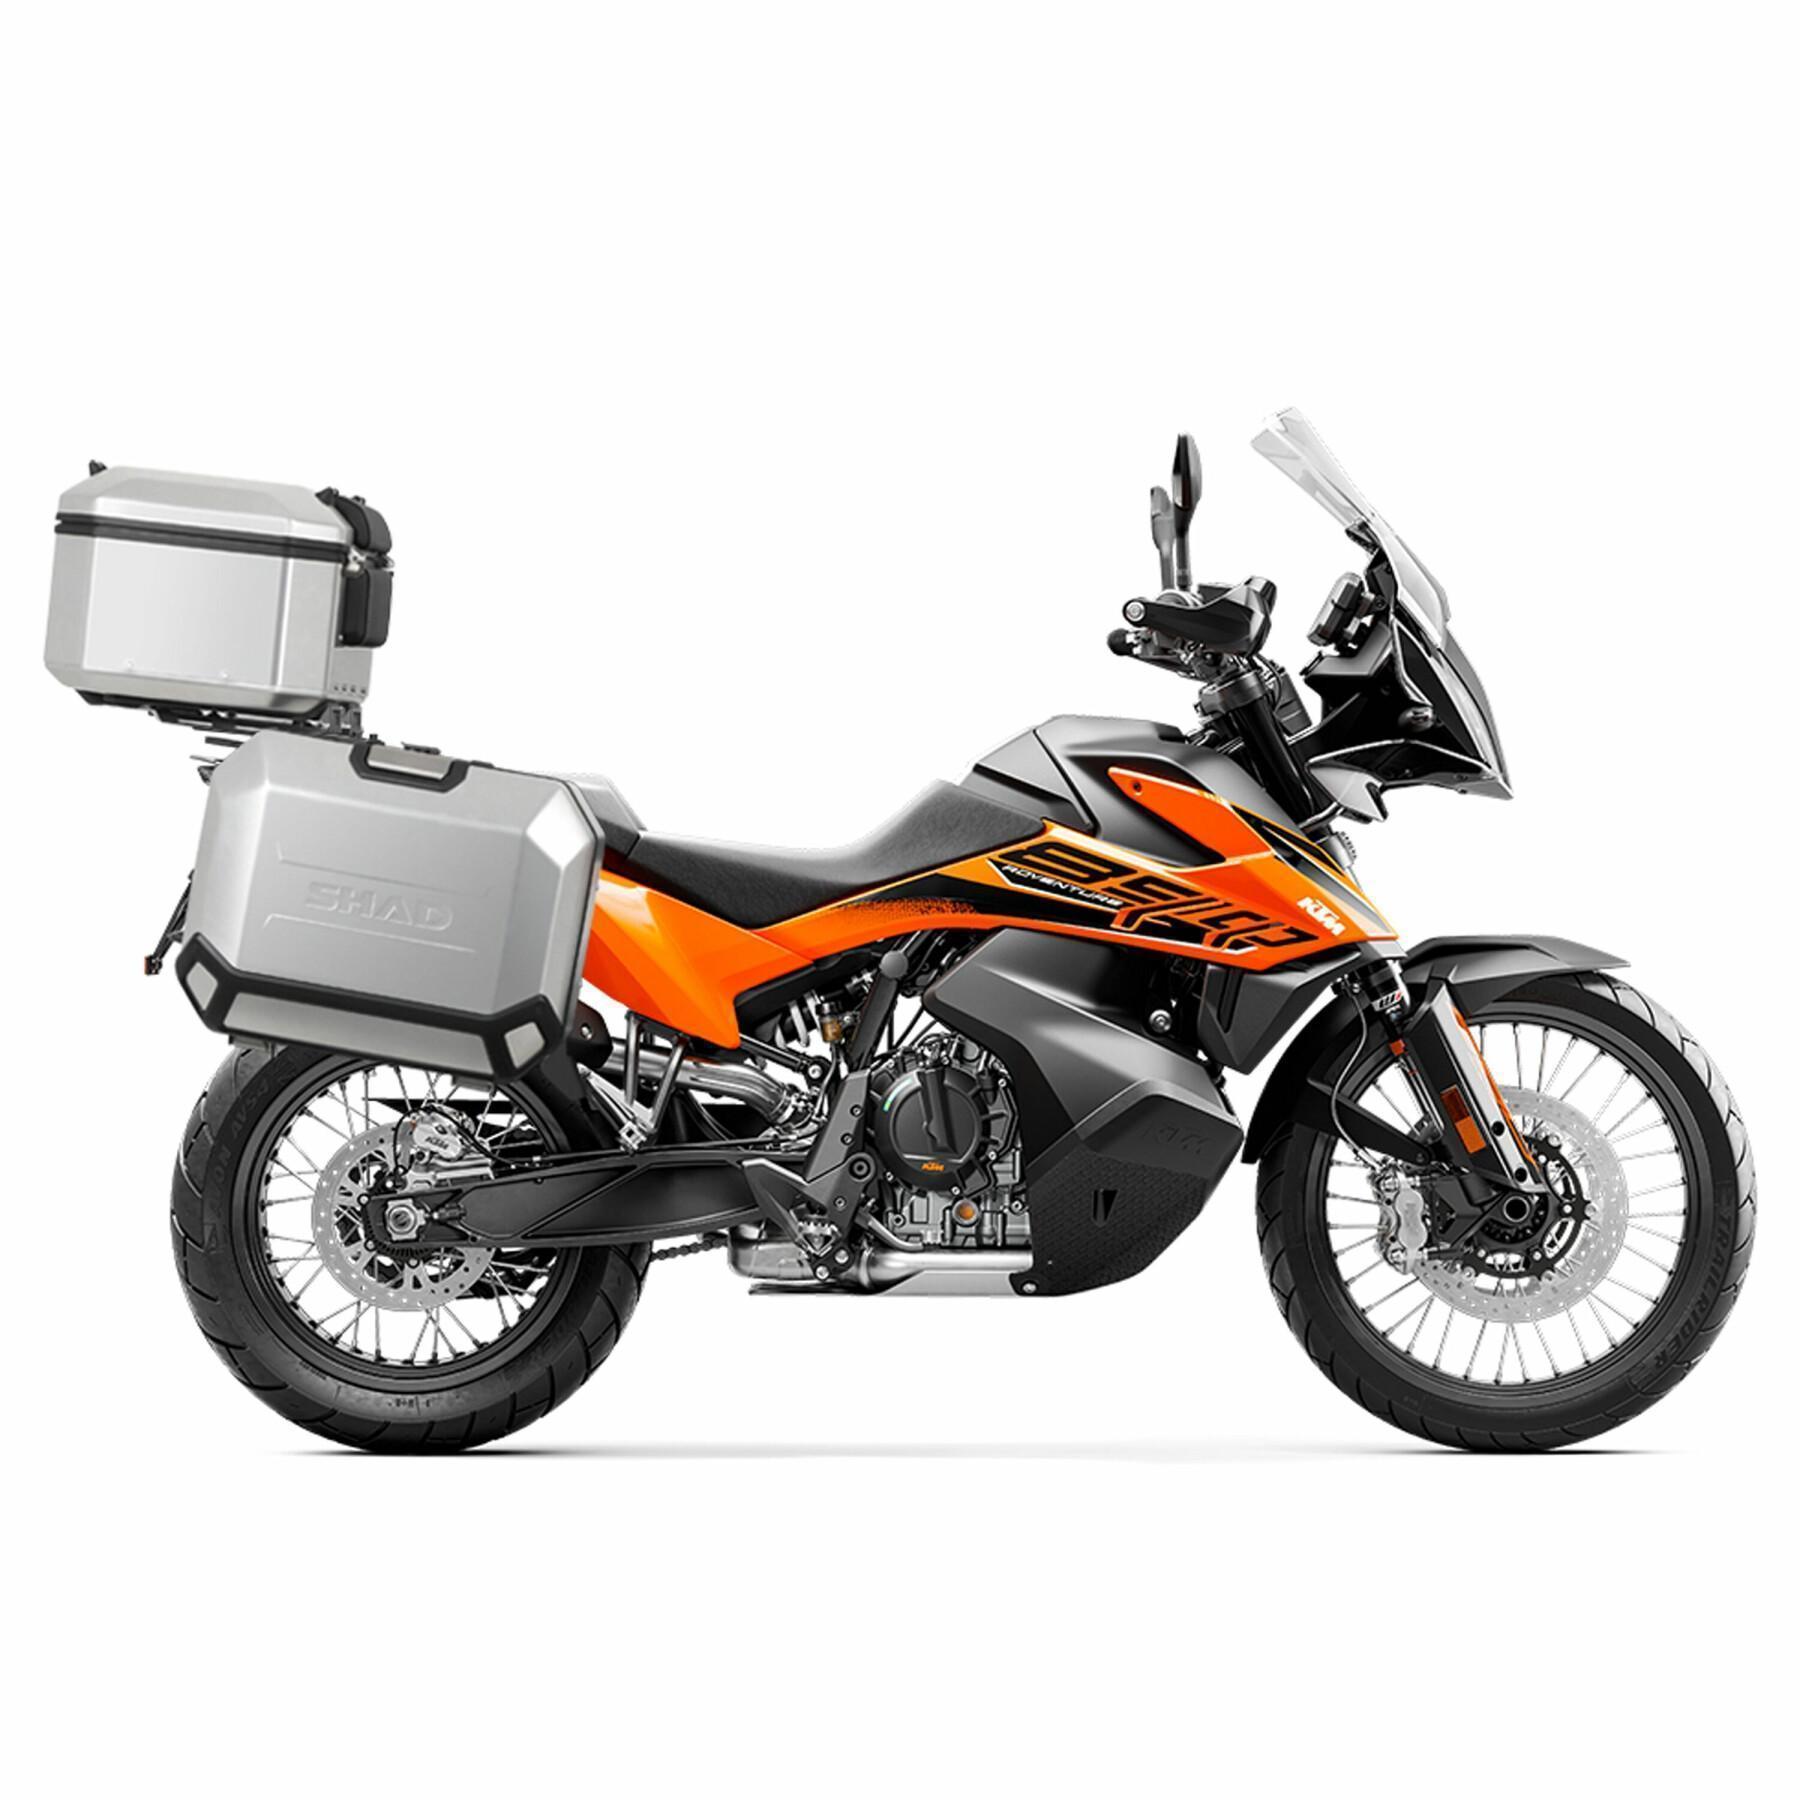 Soportes para la instalación de maletas laterales en la moto Shad 4P System KTM 790/890 Adventure